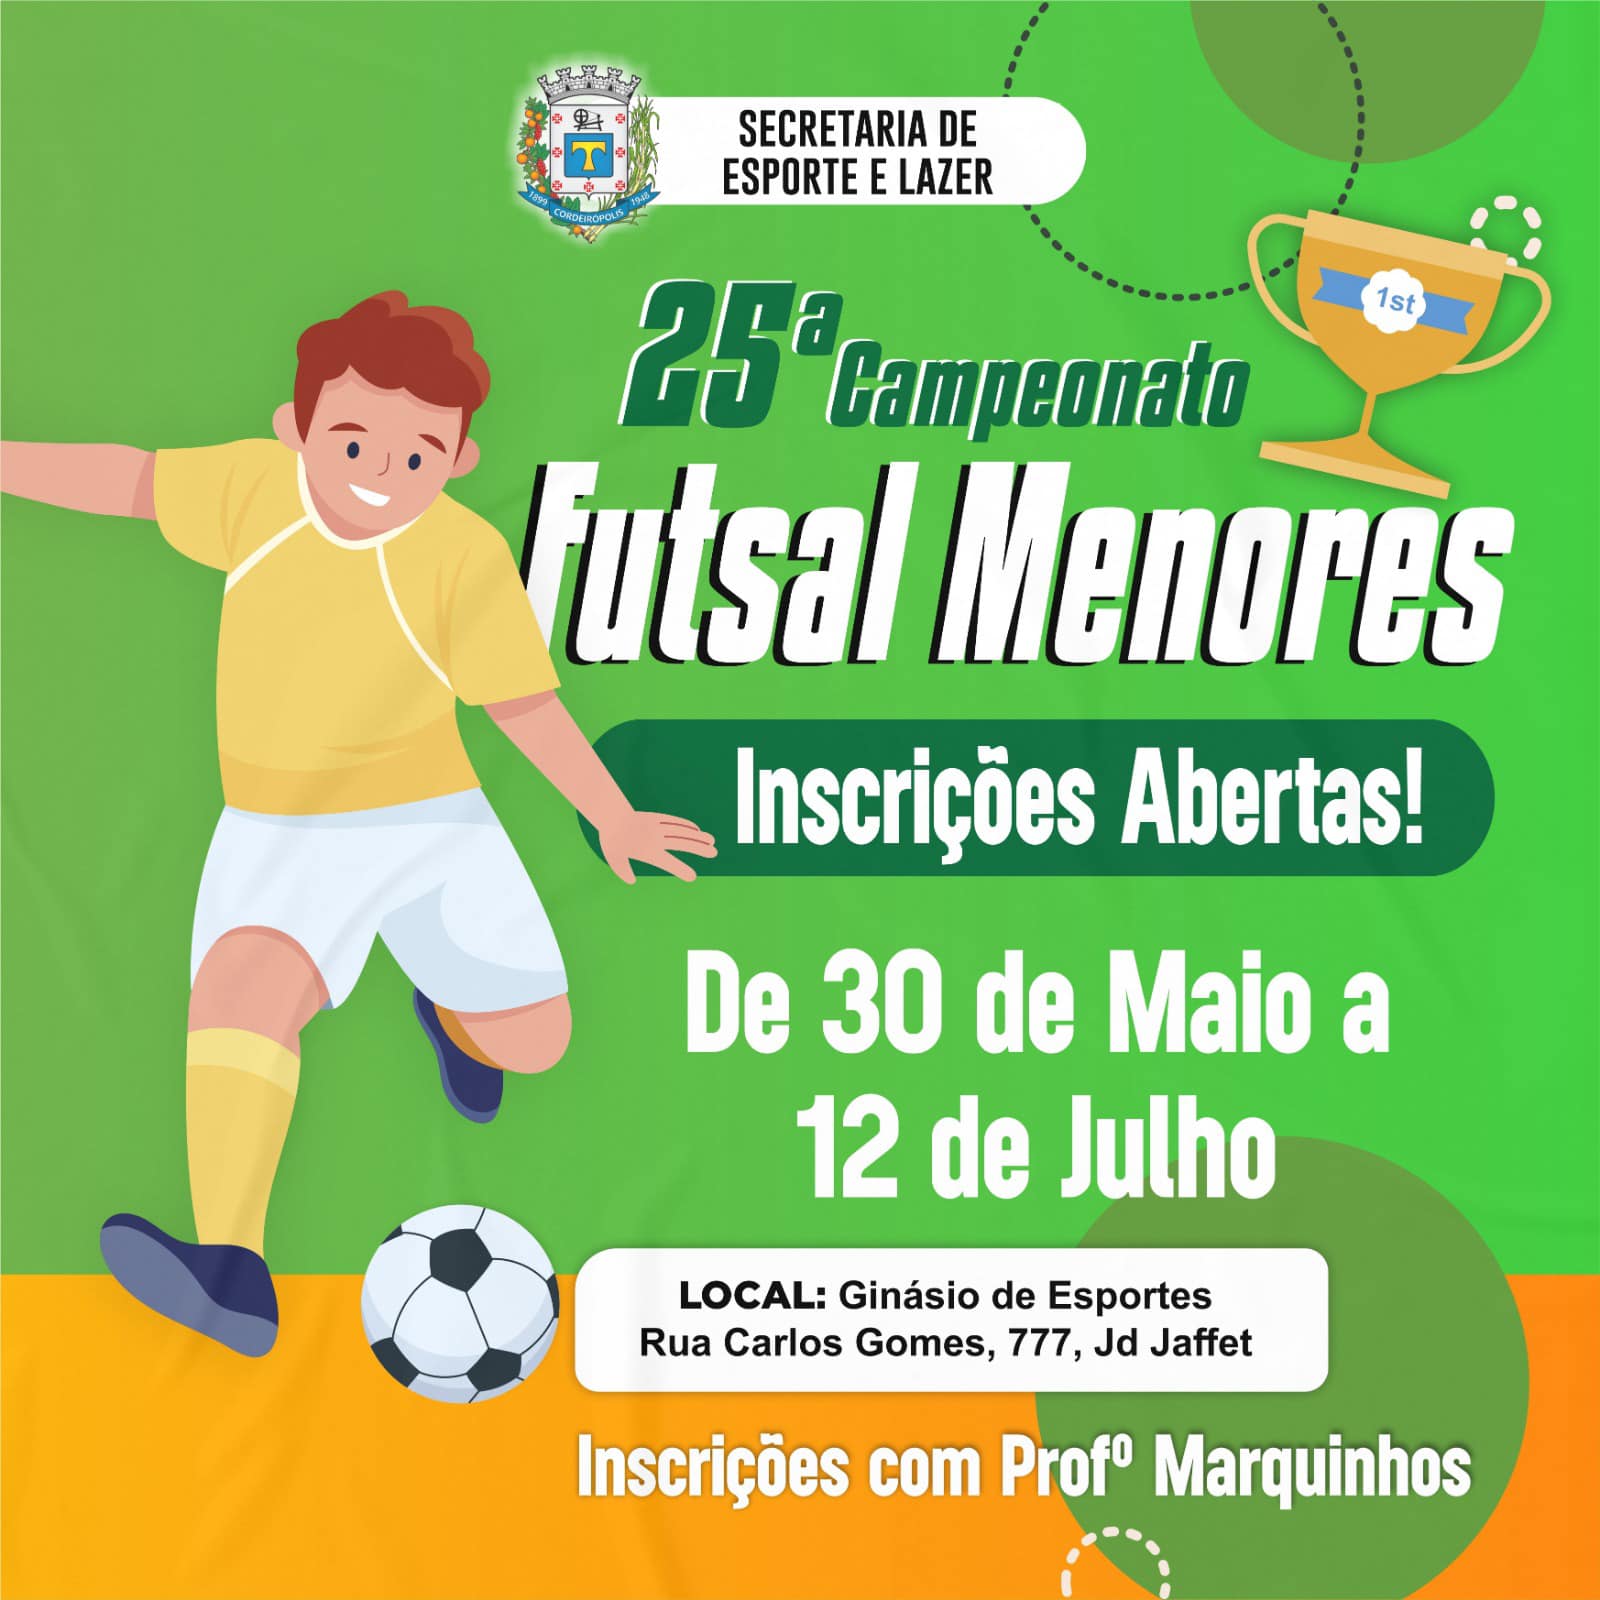 Inscrições Abertas para o 25º Campeonato de Futsal Menores